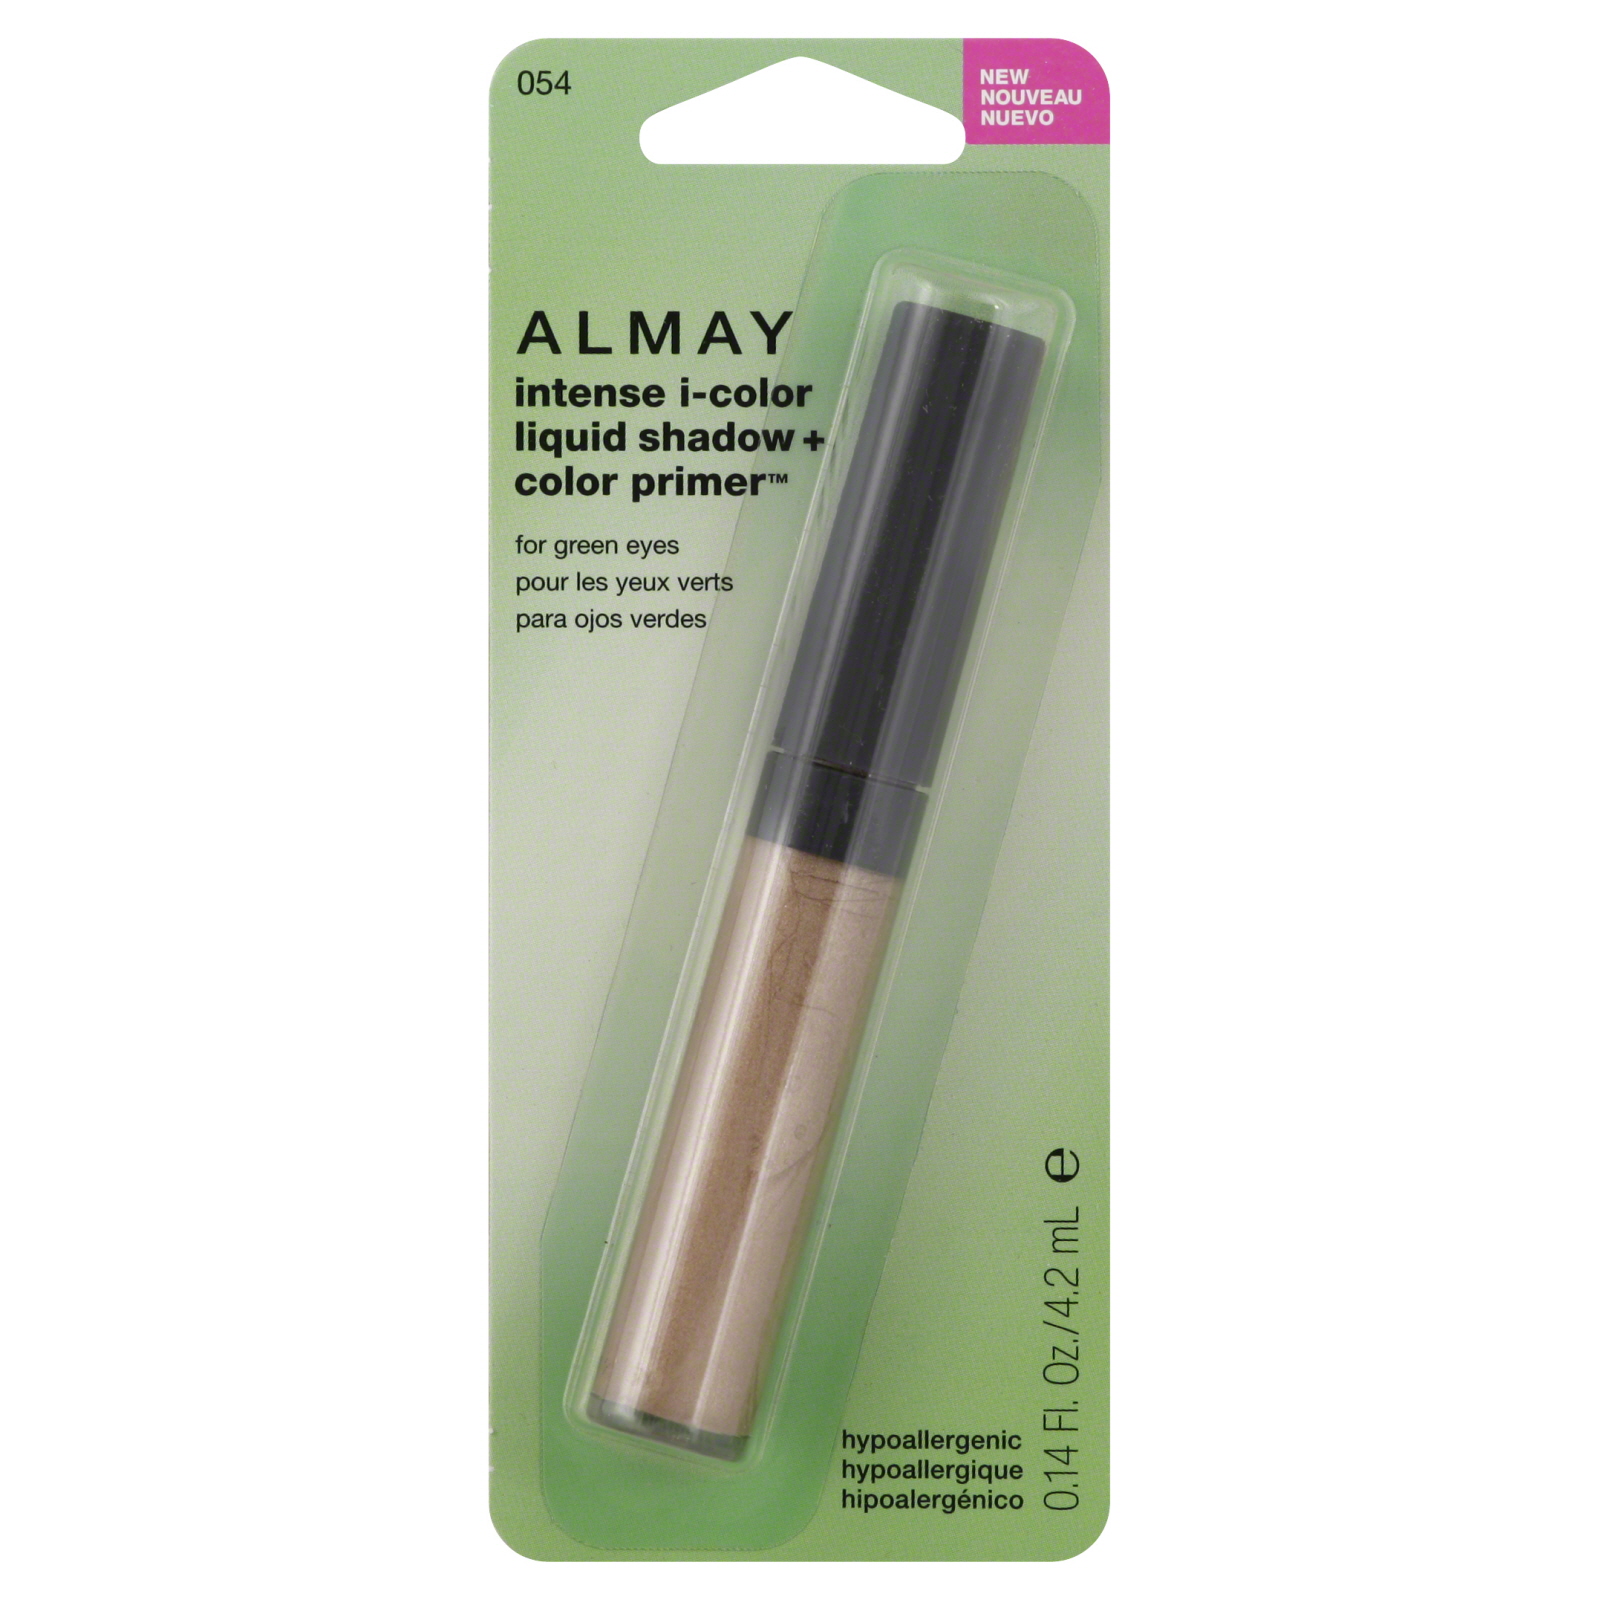 Almay Intense I-Color Liquid Eyeshadow + Clear Primer For Green Eyes, 0.14 fl oz